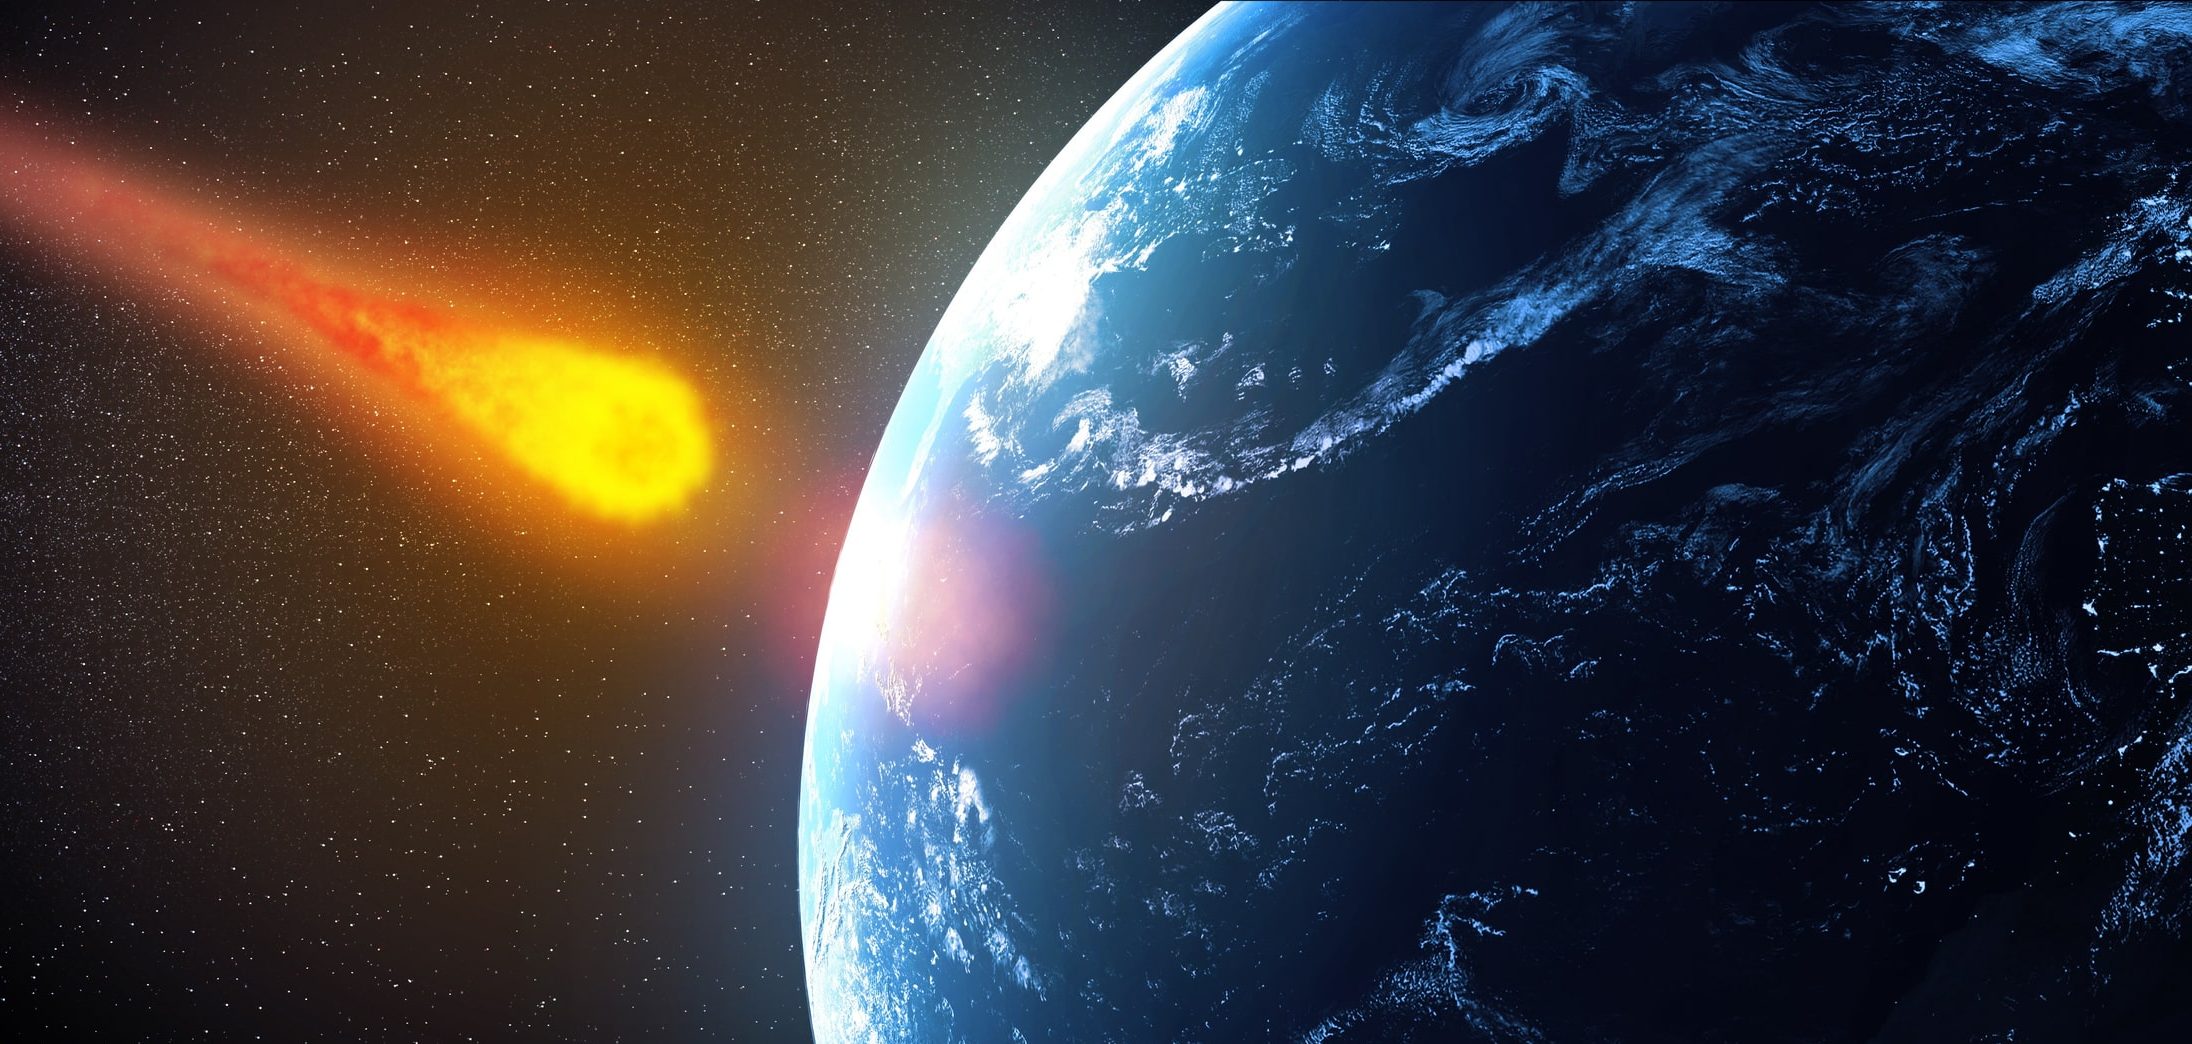 asteroide nasa impacto tierra alerta